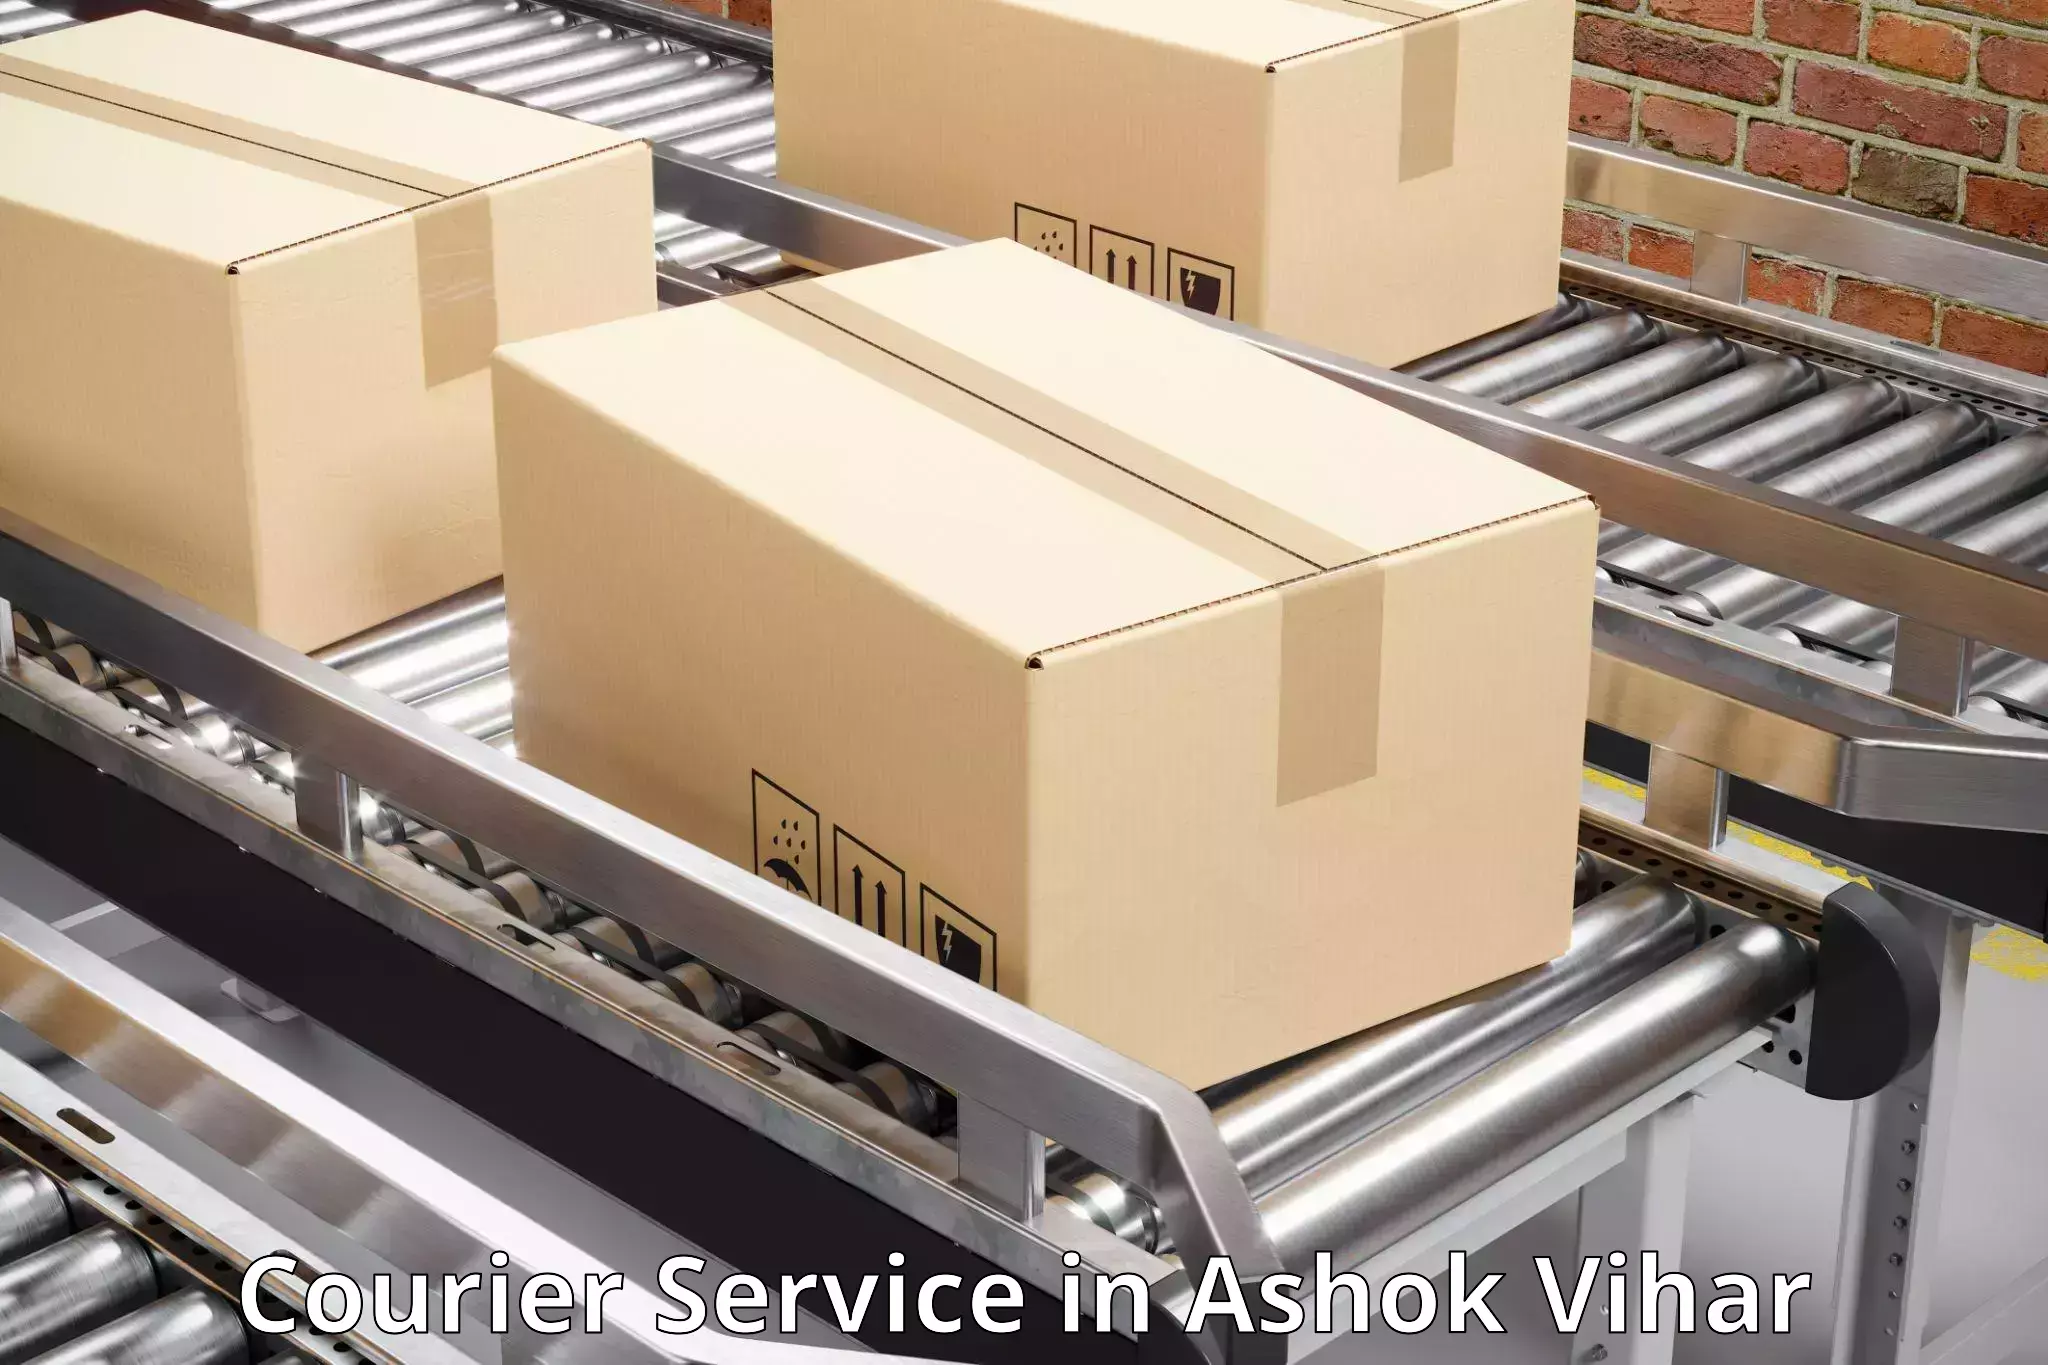 Multi-package shipping in Ashok Vihar